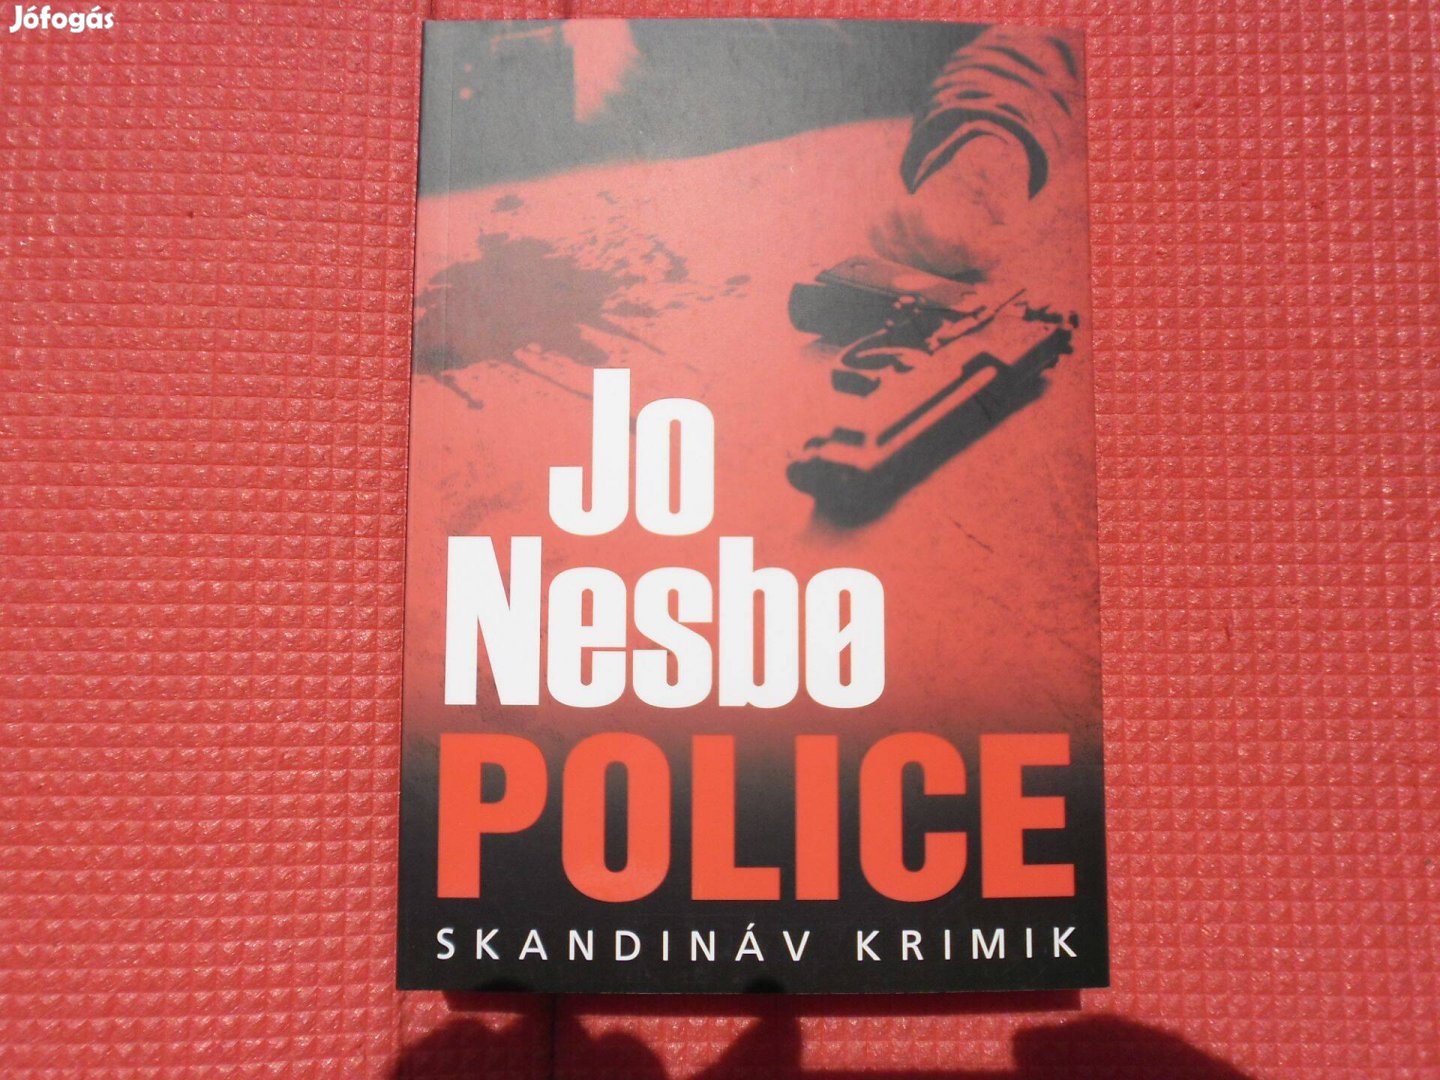 Jo Nesbo: Police /Skandináv krimik/